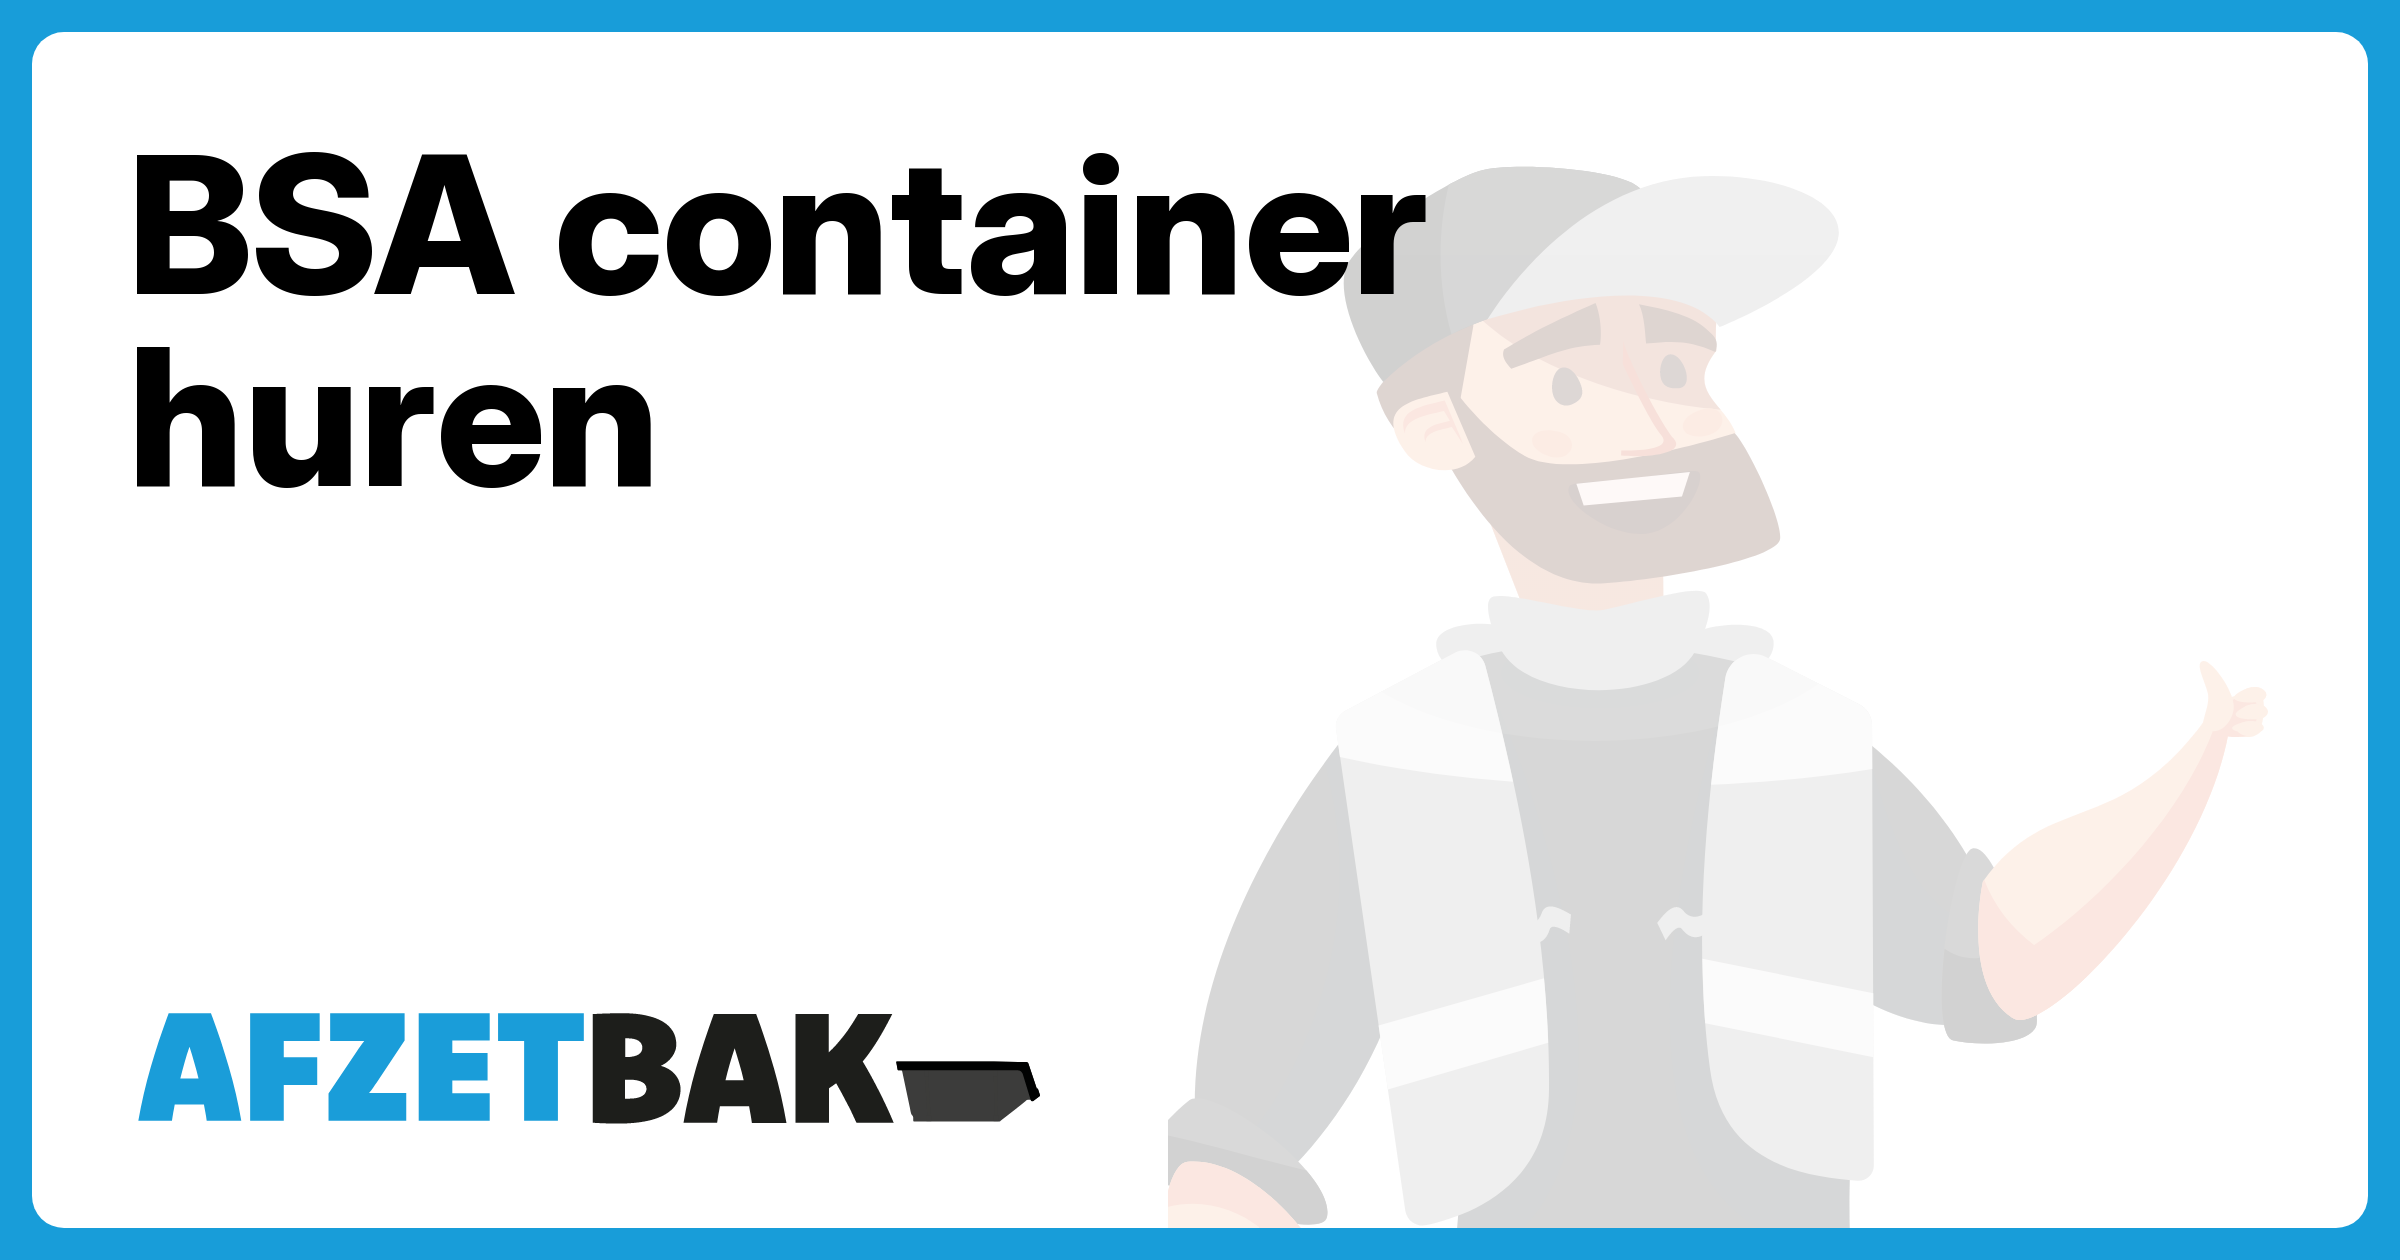 BSA container huren - Afzetbak.nl